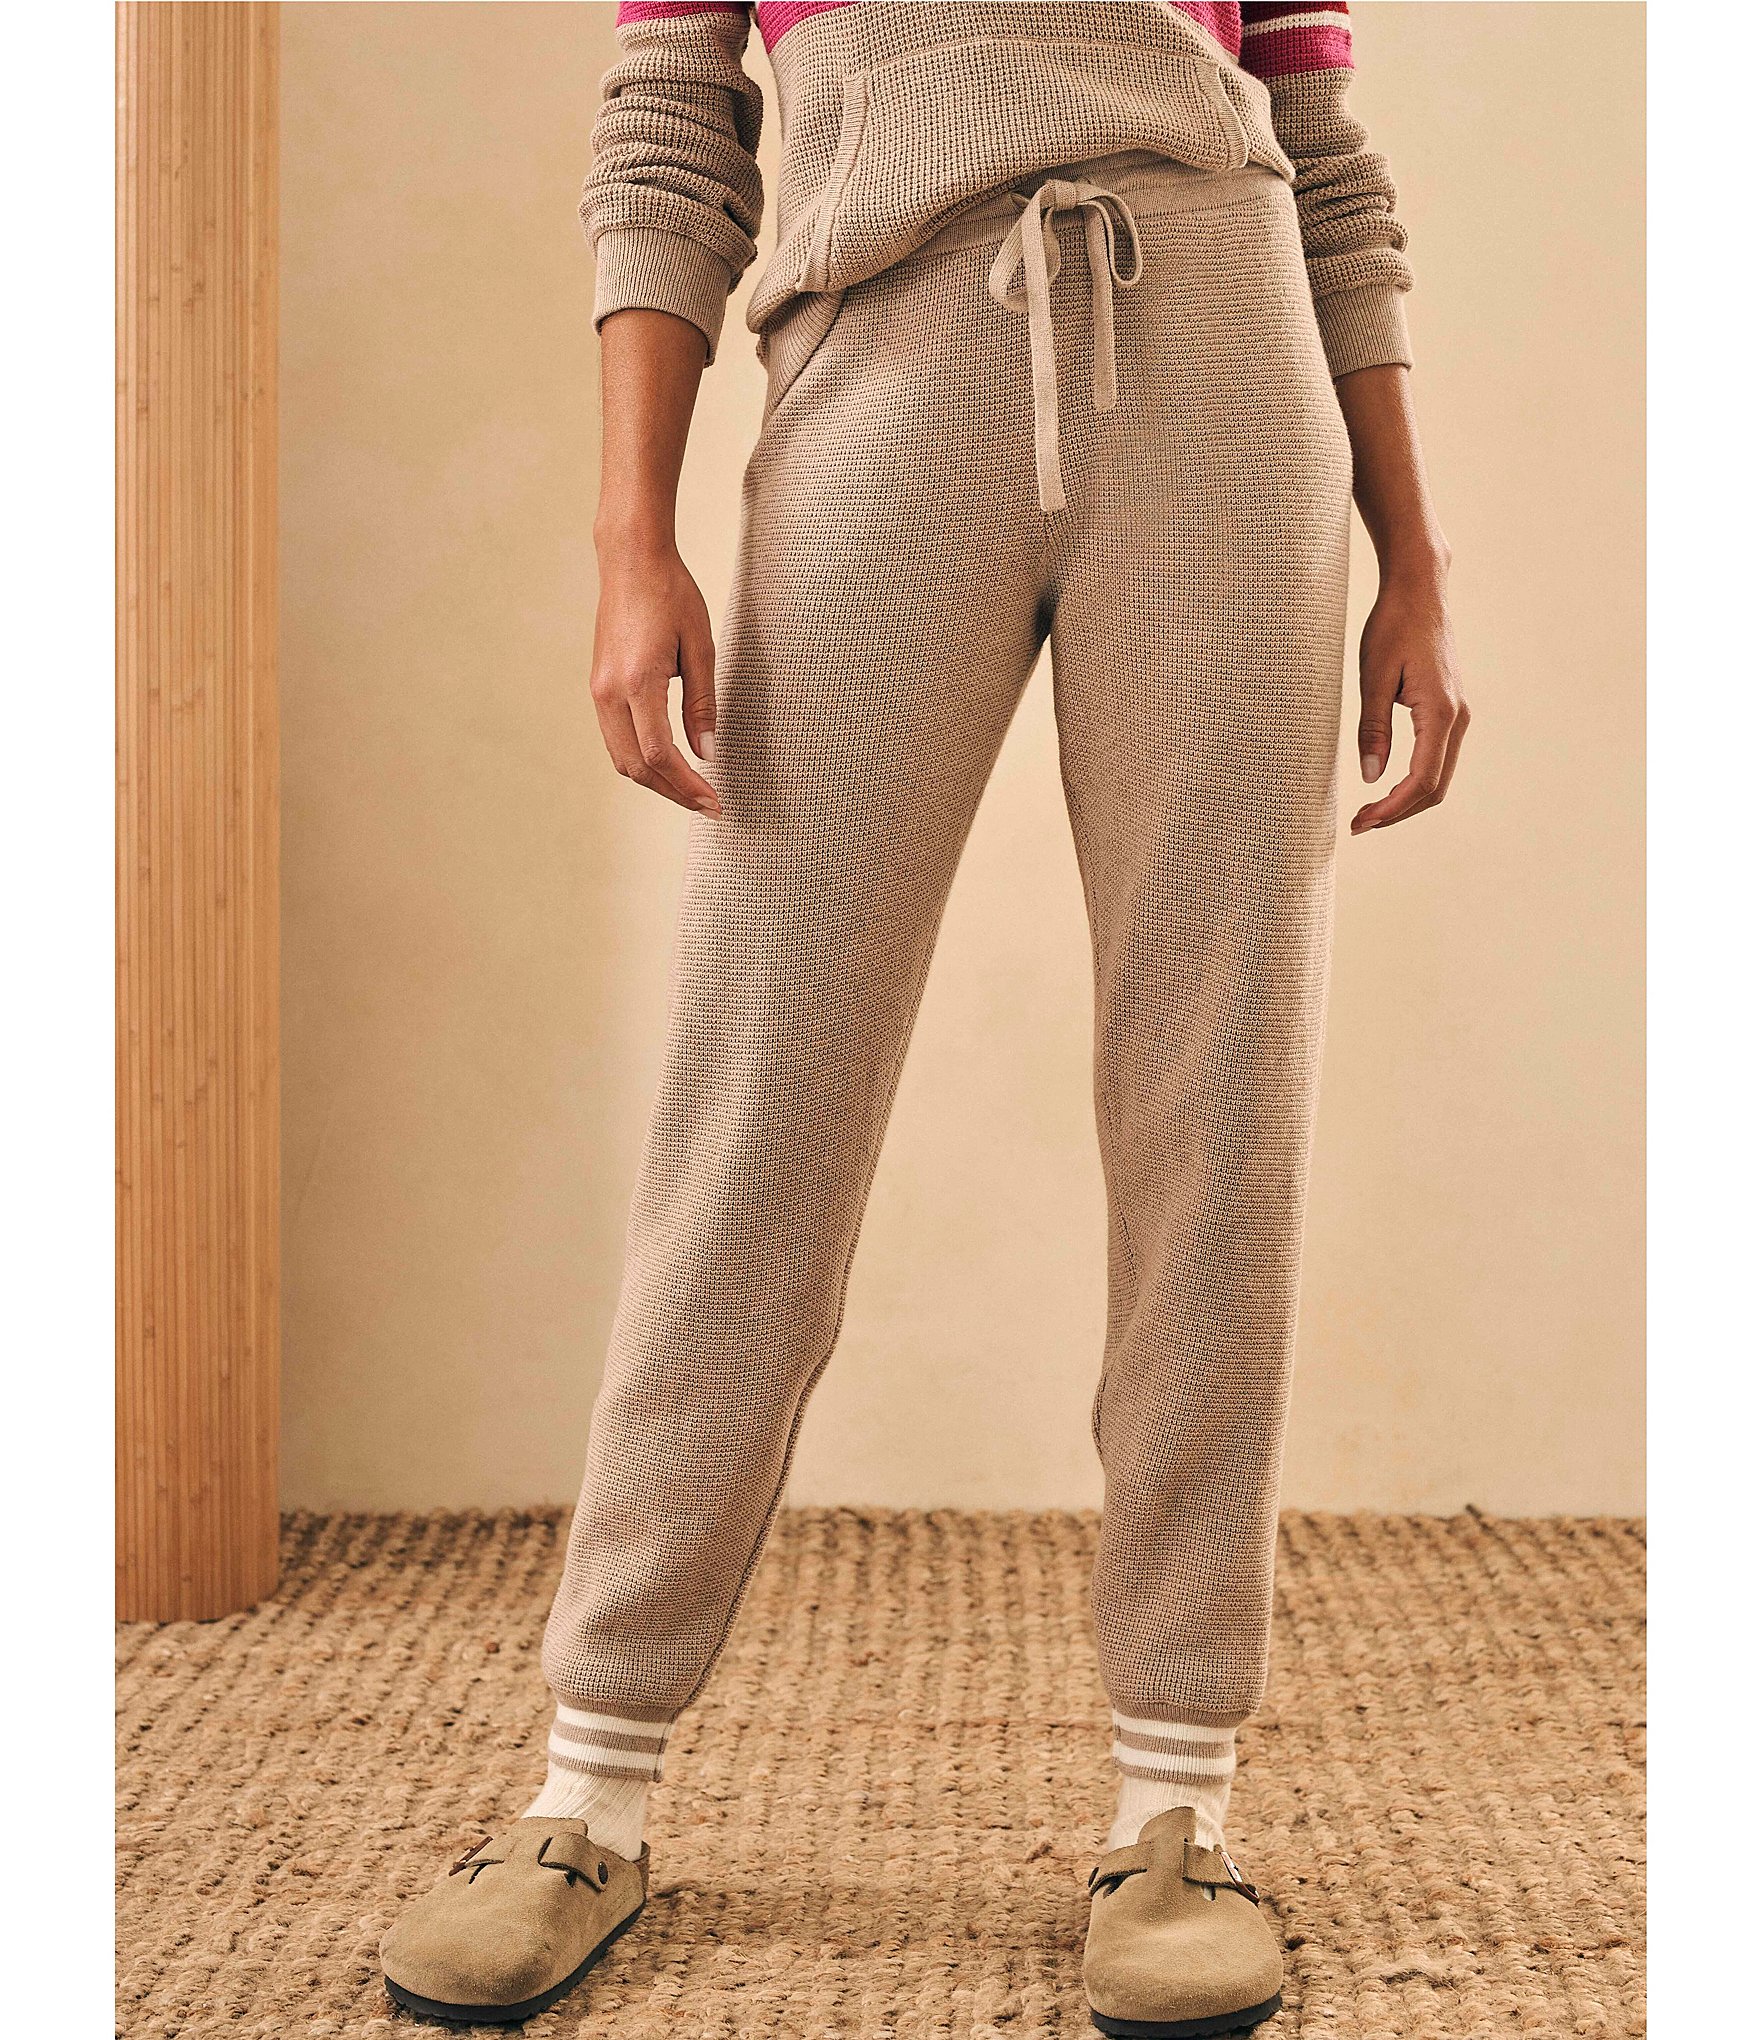 Sale & Clearance Lingerie : Pajamas, Bras, & Panties